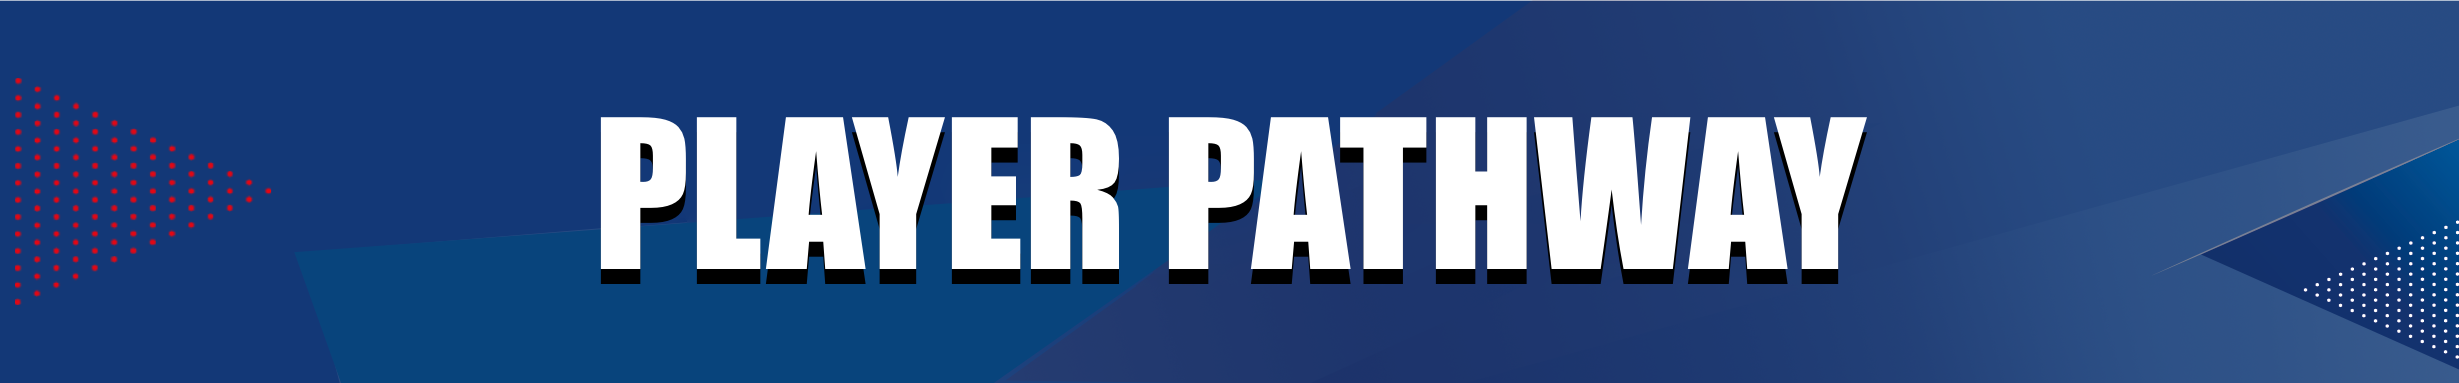 FFA - Header website player pathway